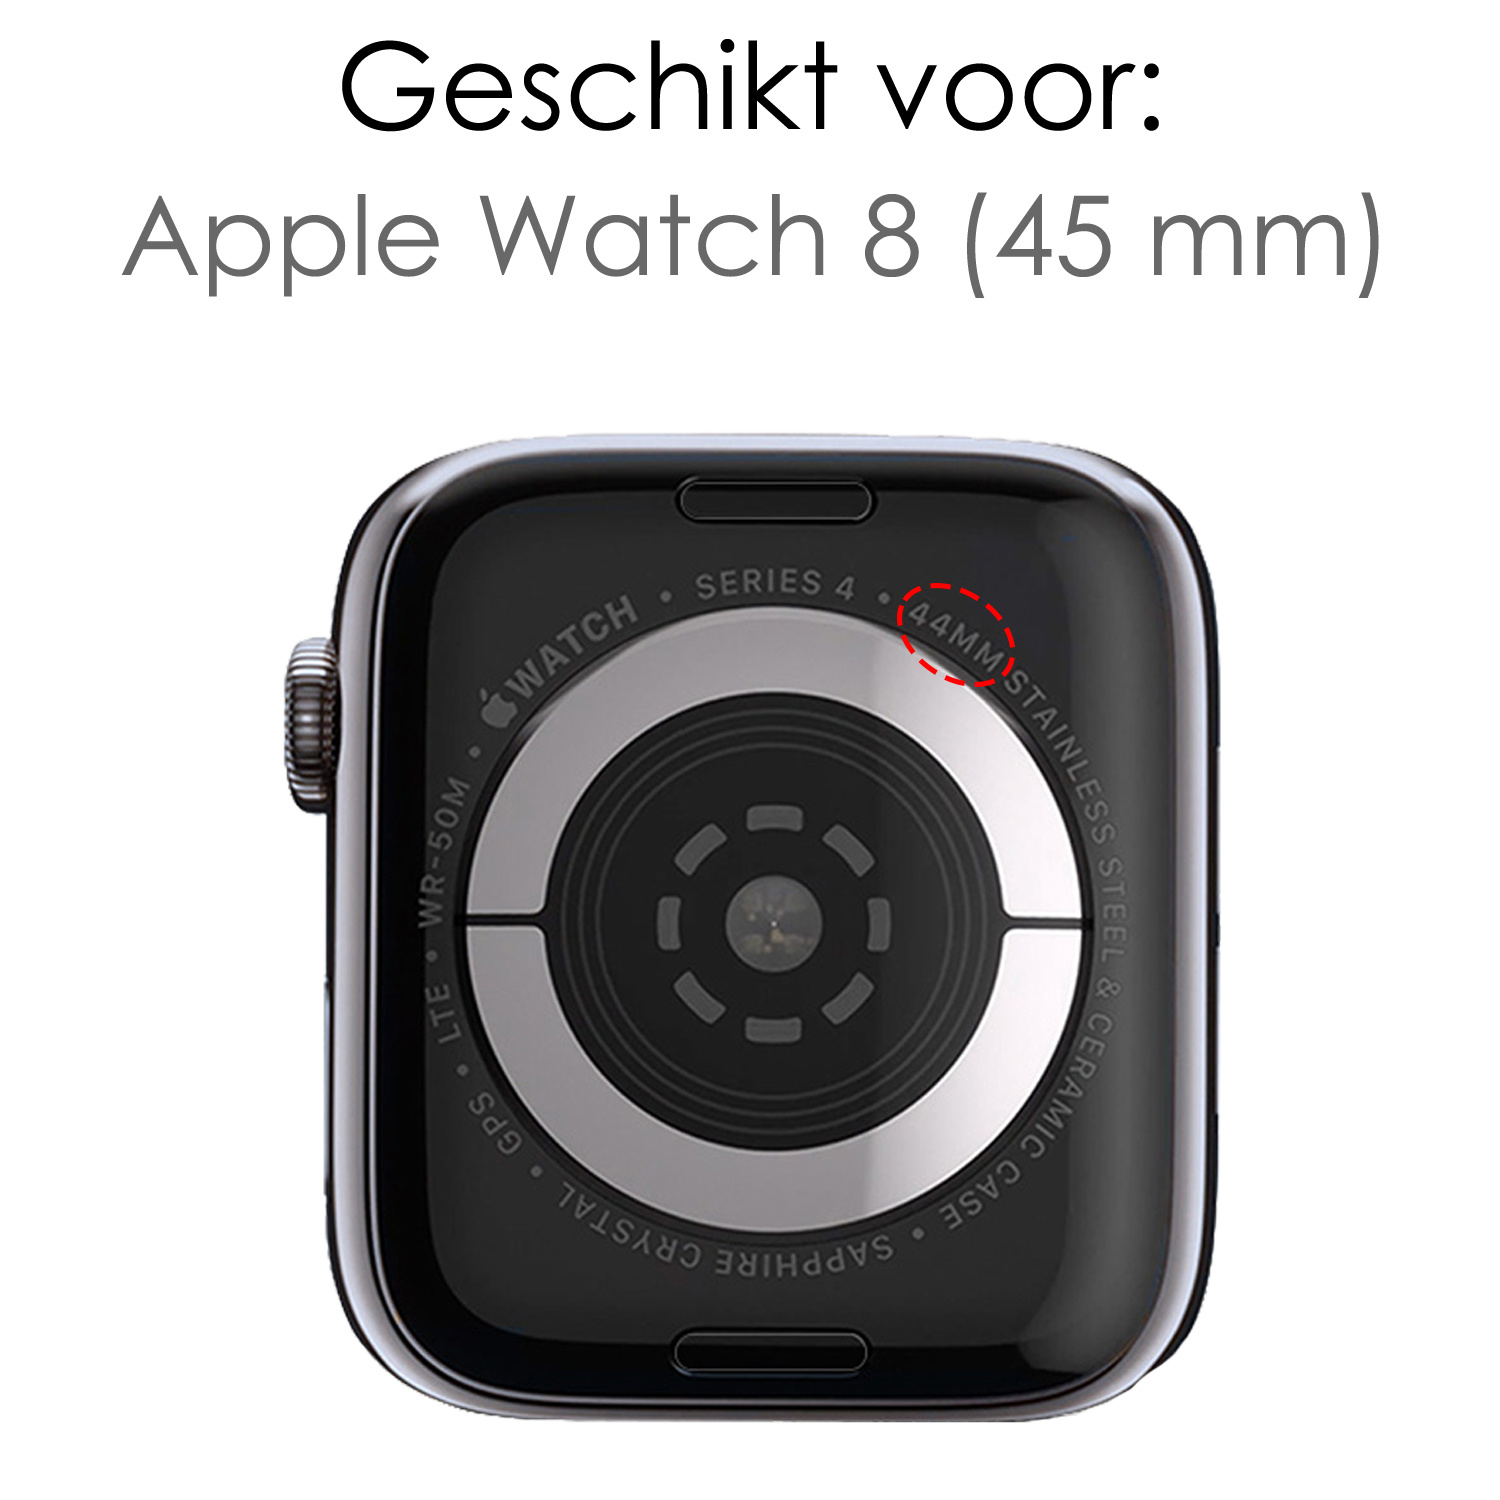 NoXx Horlogeband Milanees Geschikt voor Apple Watch 8 45 mm Bandje - Bandje Geschikt voor Apple Watch 8 45 mm Band Milanees - Zwart